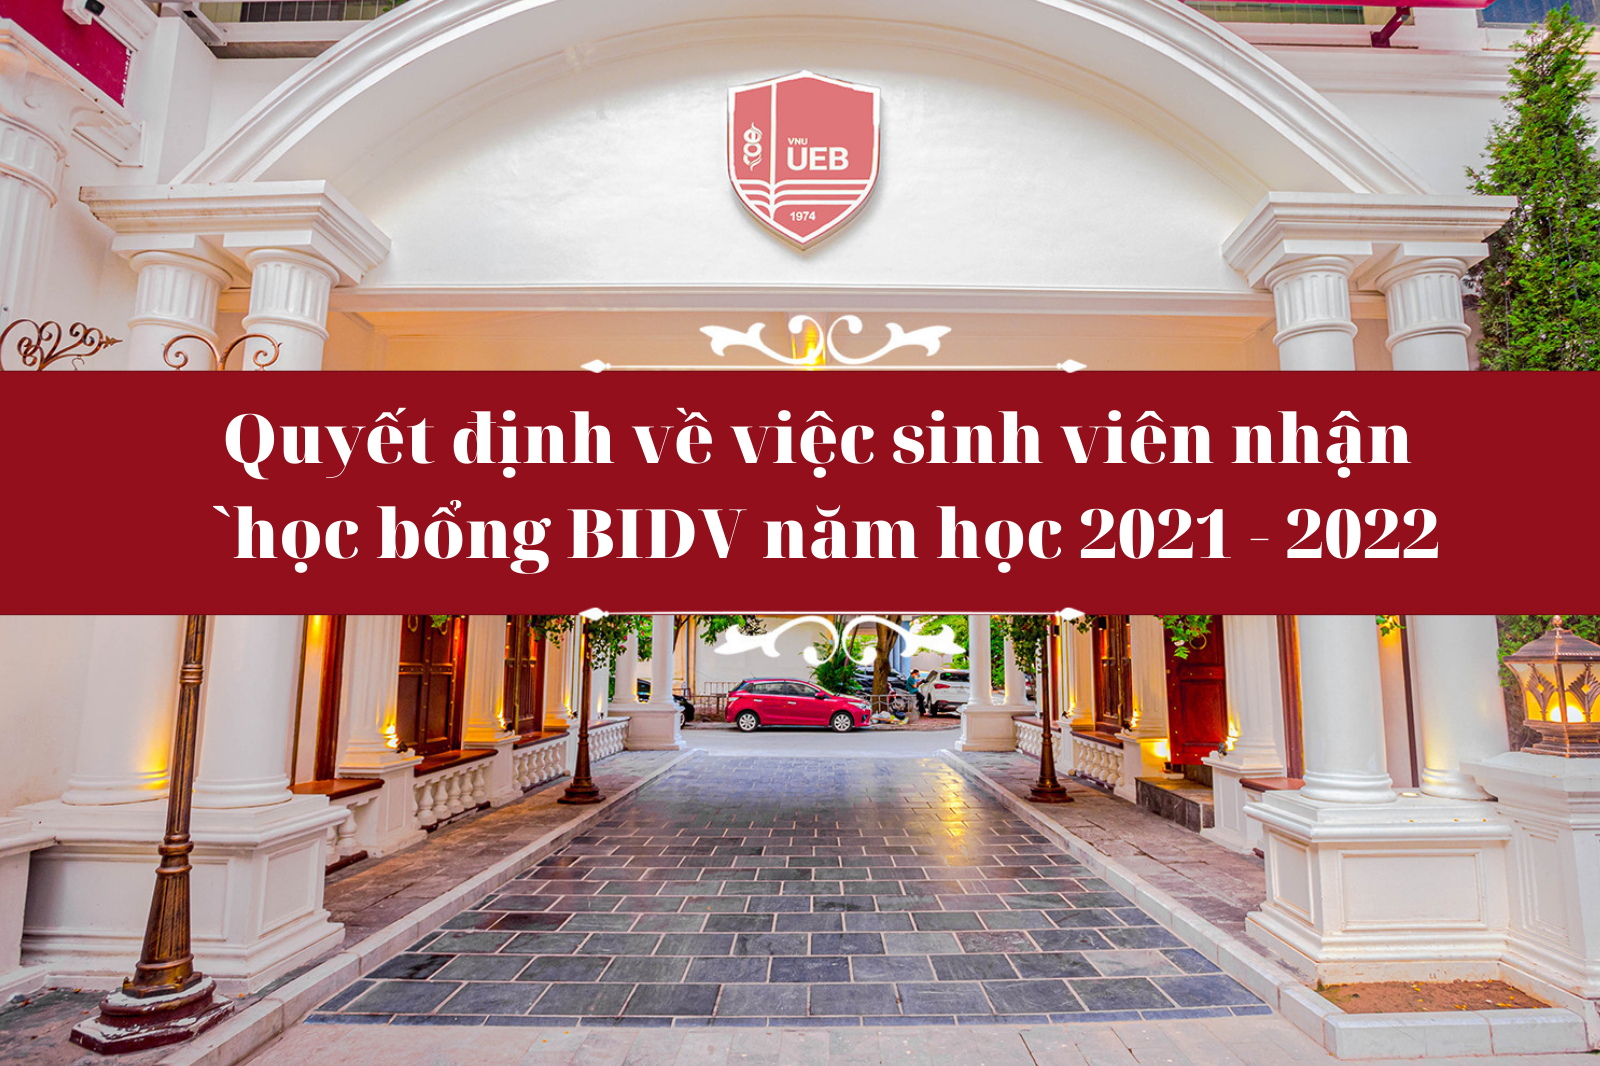 Quyết định về việc sinh viên nhận học bổng BIDV năm học 2021 - 2022